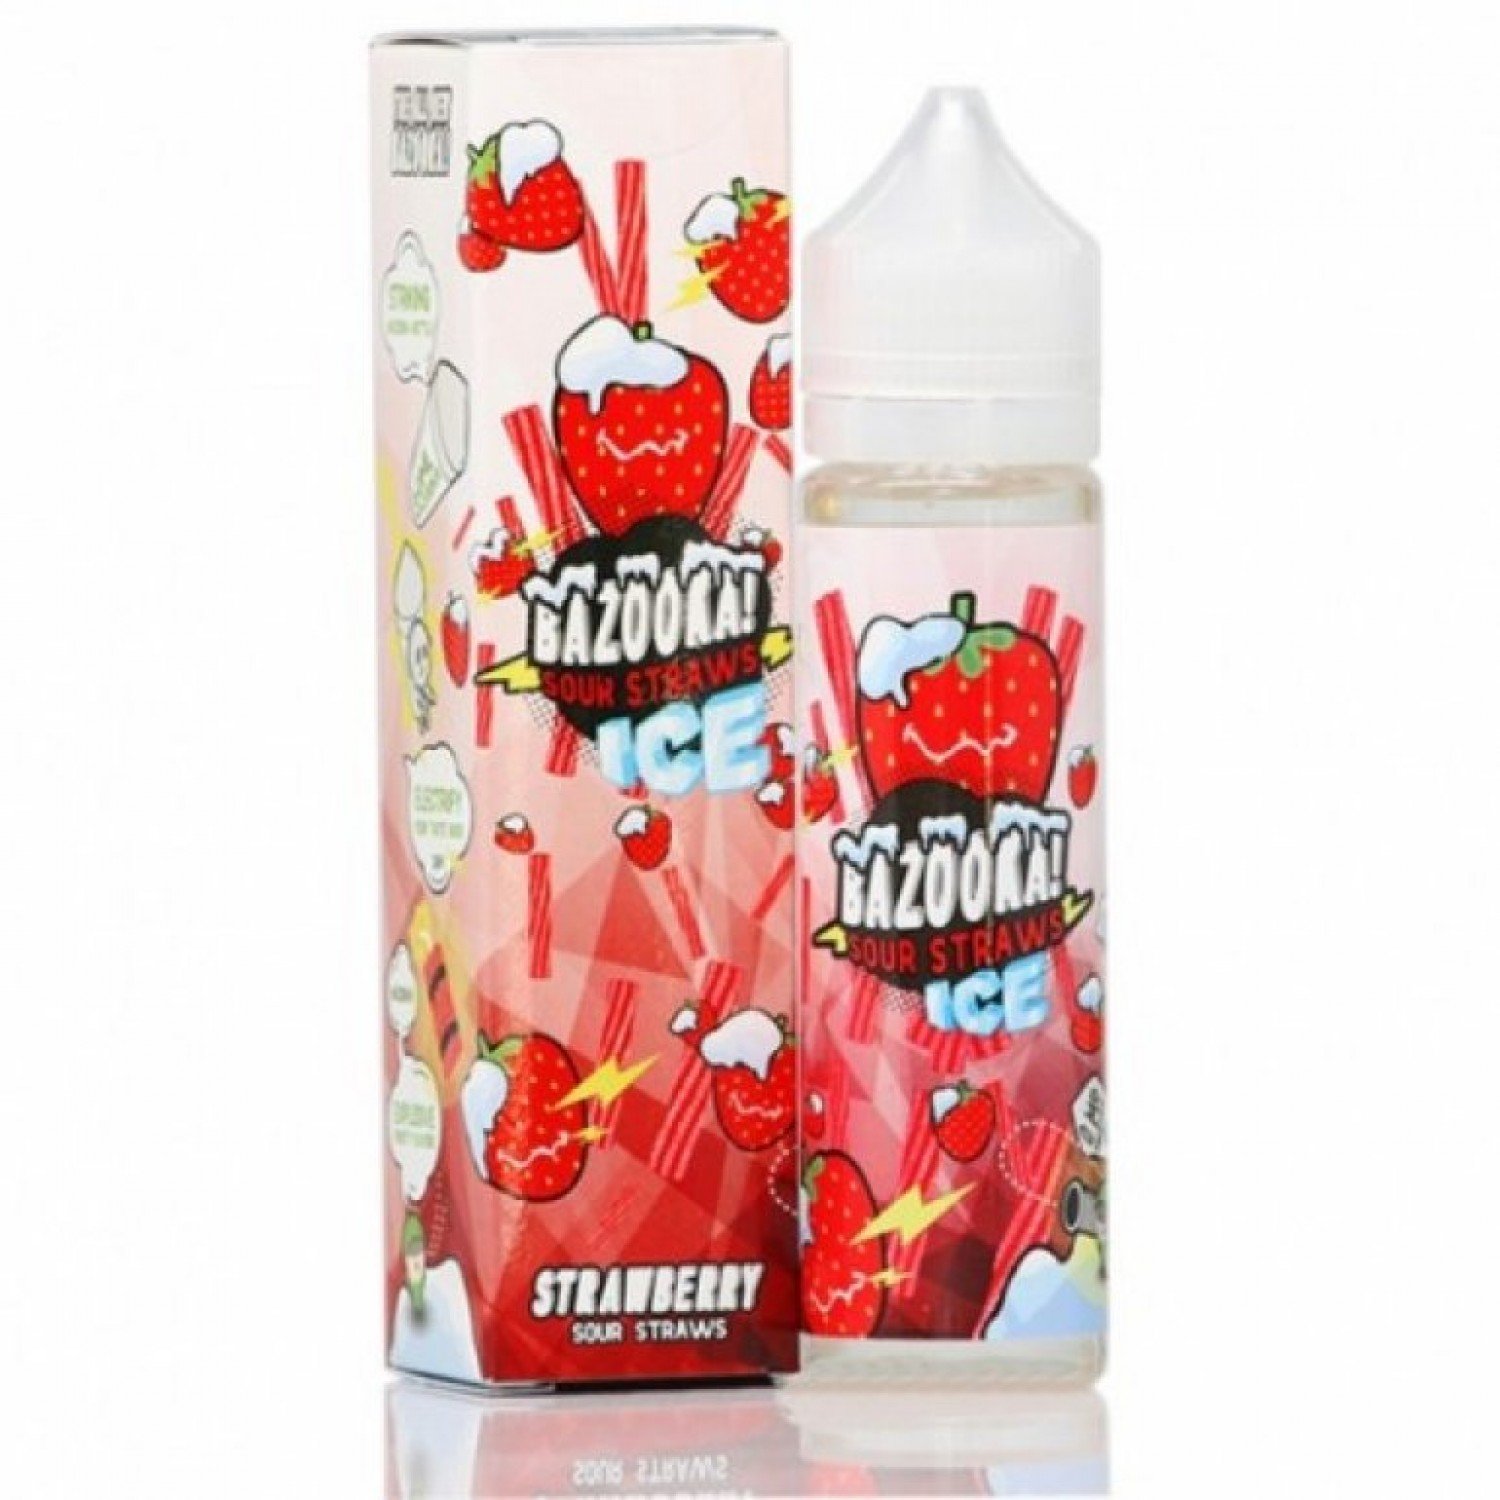 Bazooka - Sour Straws Ice Strawberry 60 ml Premium Likit